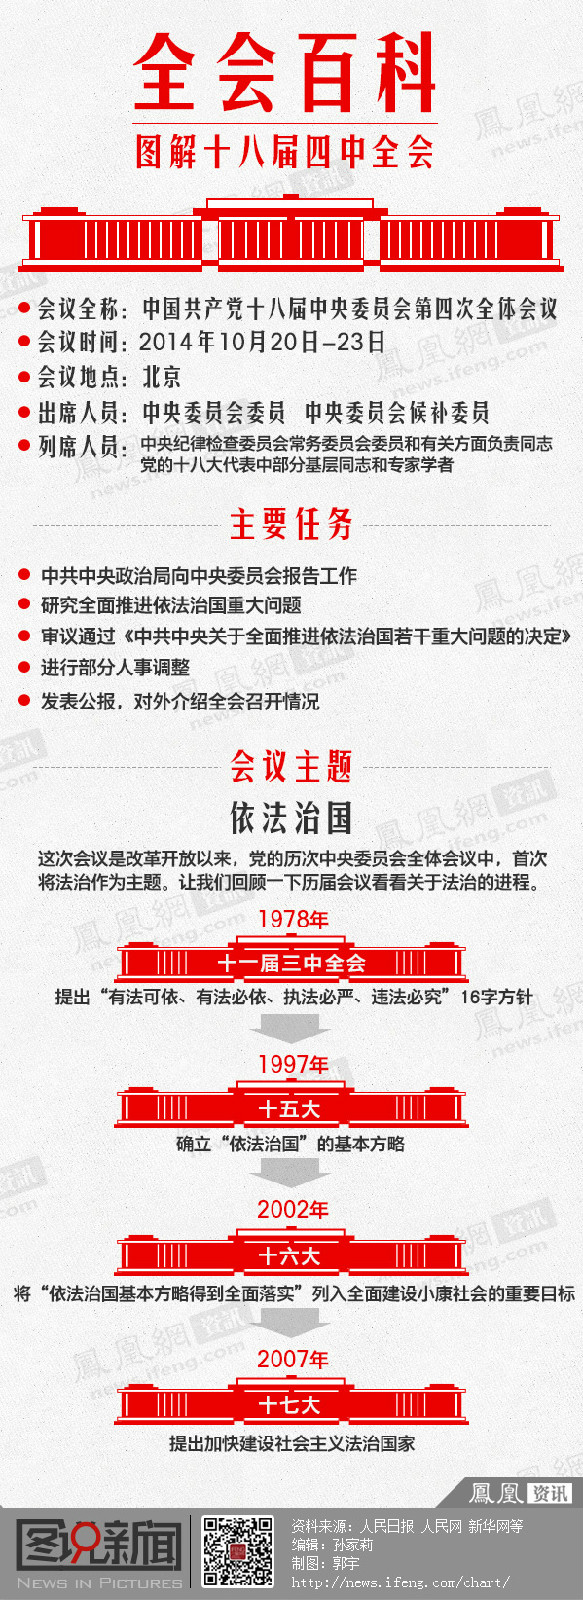 中國共產黨第十八屆中央委員會第四次全體會議